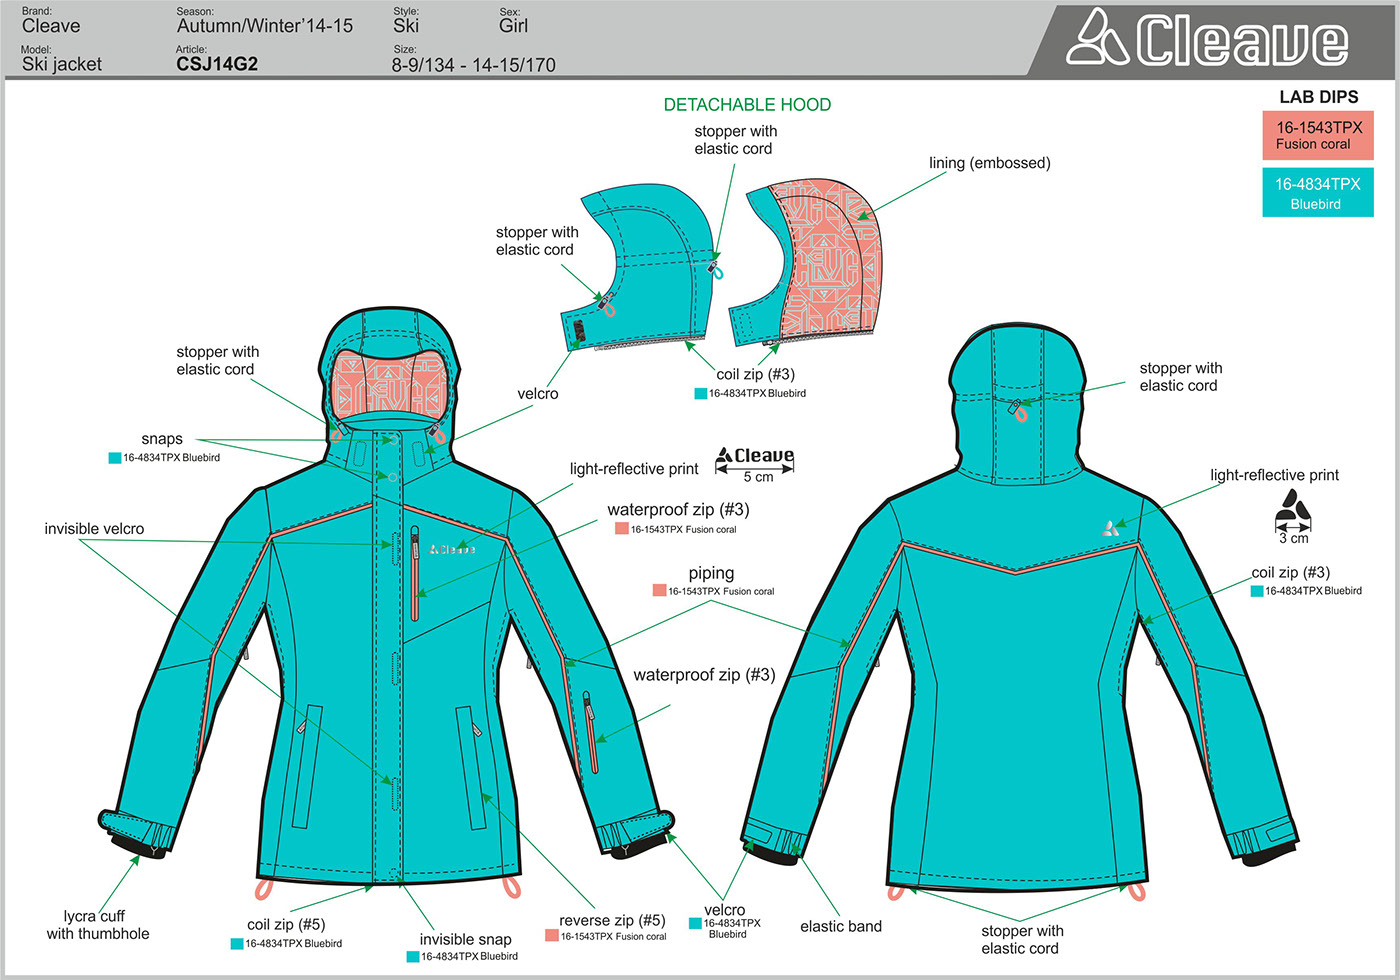 Ski clothes Outerwear sketches FLATSKETCHES technicalsketches flat spec sketches Spec winter Wintersport sport sportclothes jacket pants accessories